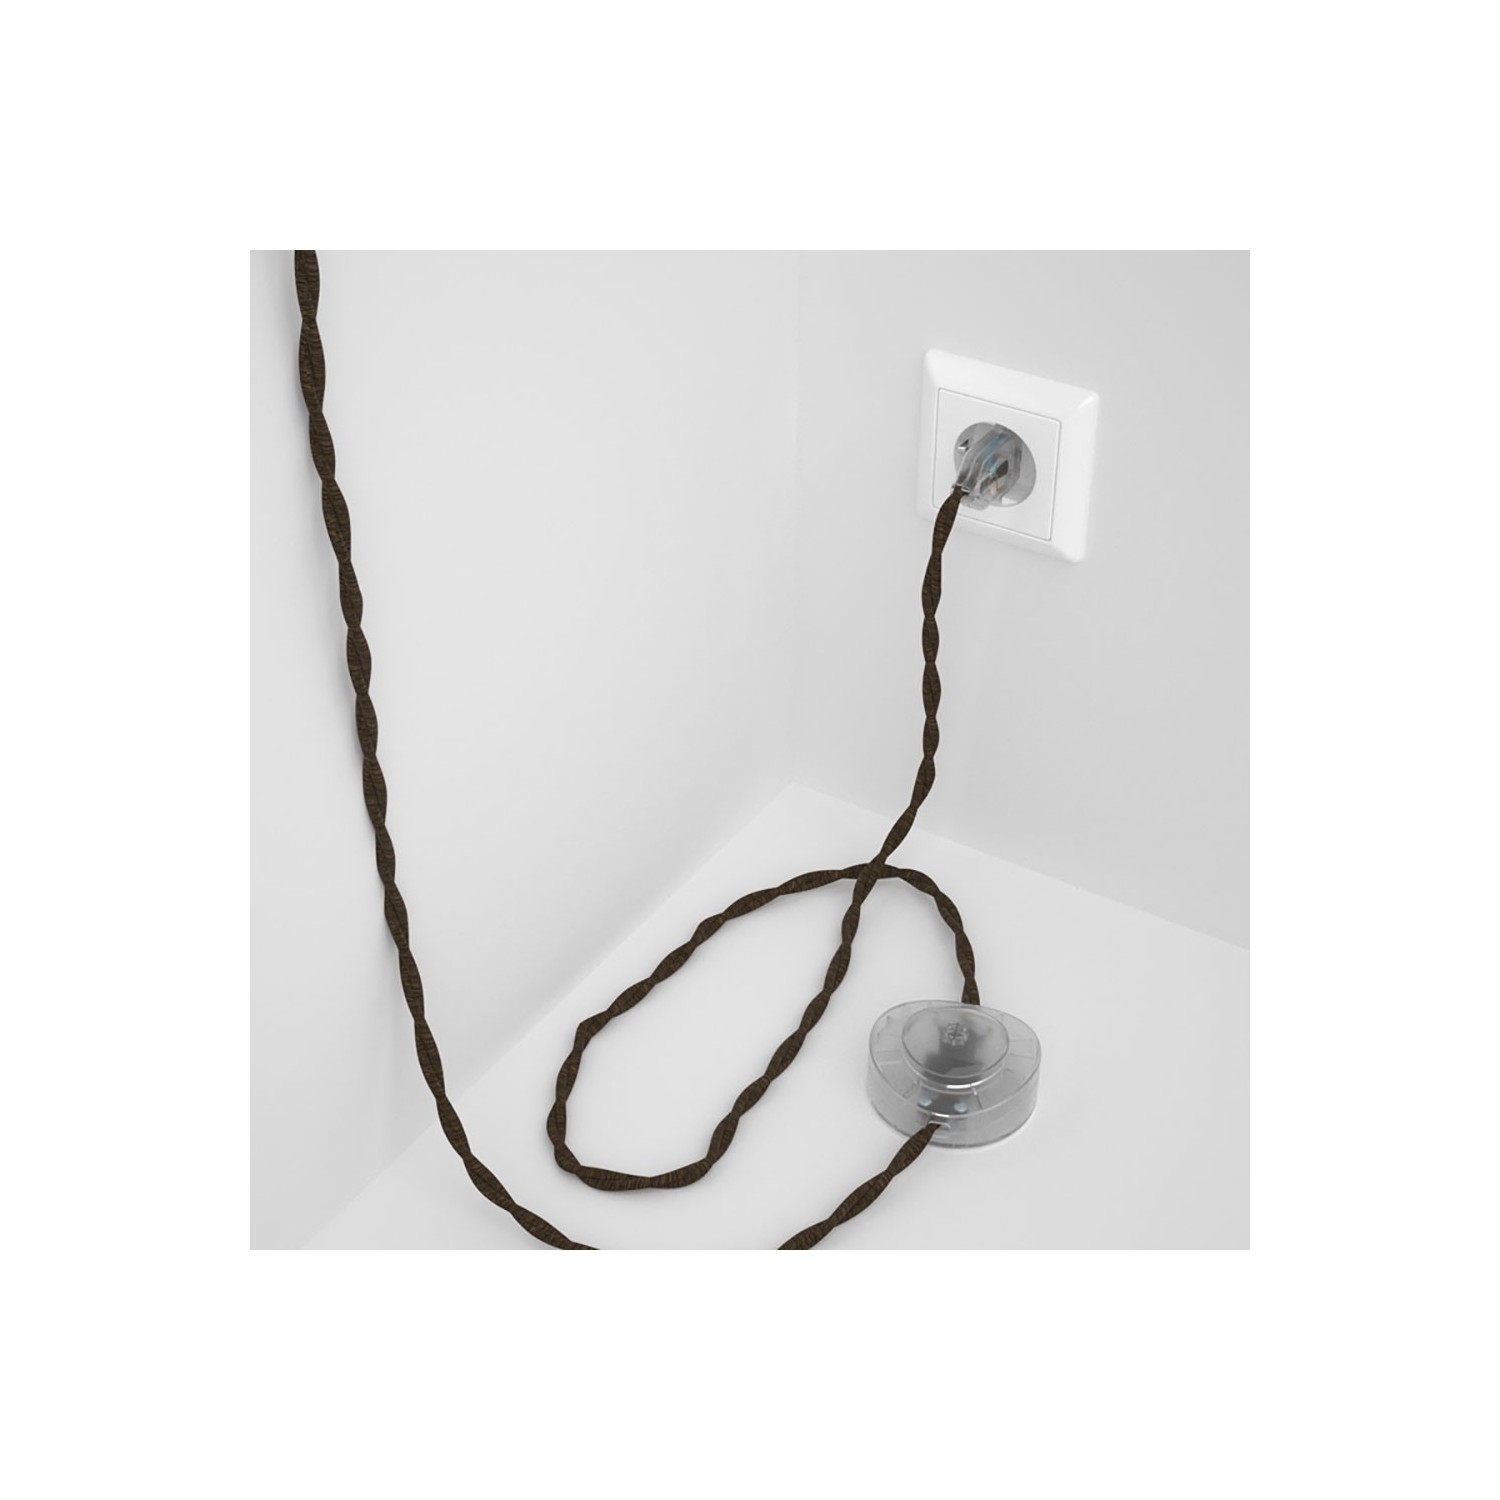 Cableado para lámpara de pie, cable RN04 Lino Natural Marrón 3 m. Elige tu el color de la clavija y del interruptor!